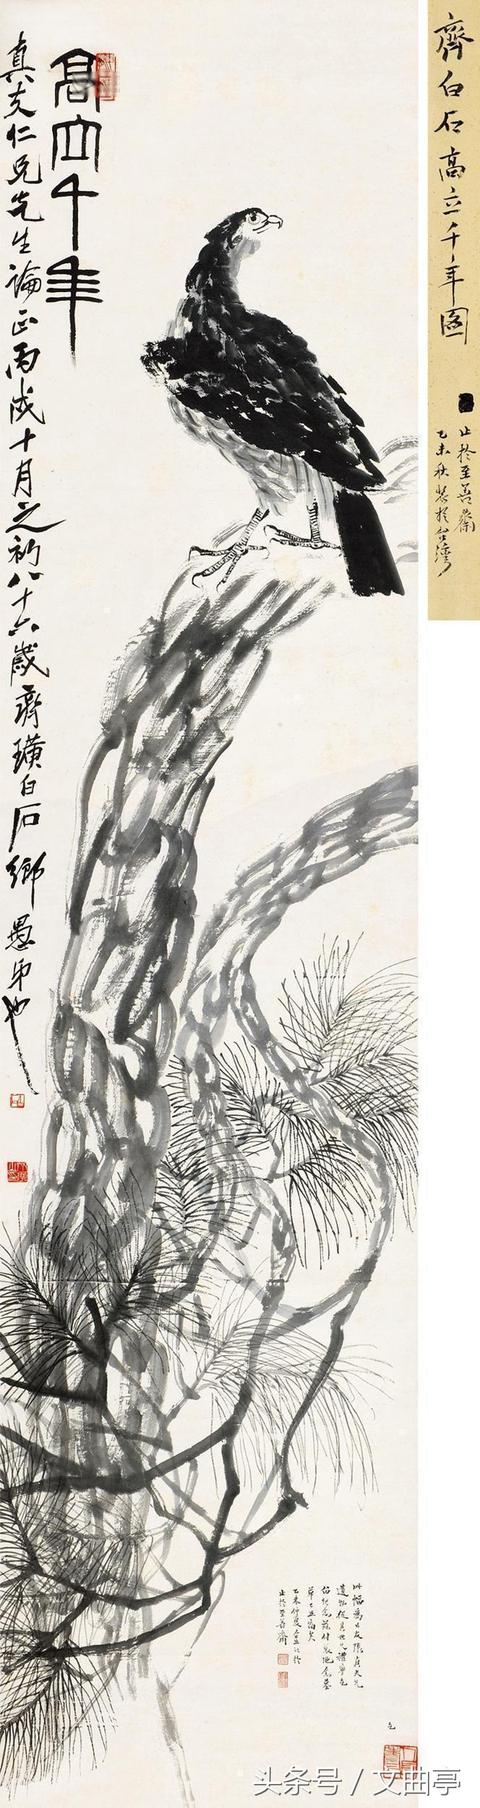 齐白石一生中最贵的画,送给老蒋的这一幅价值四个多亿